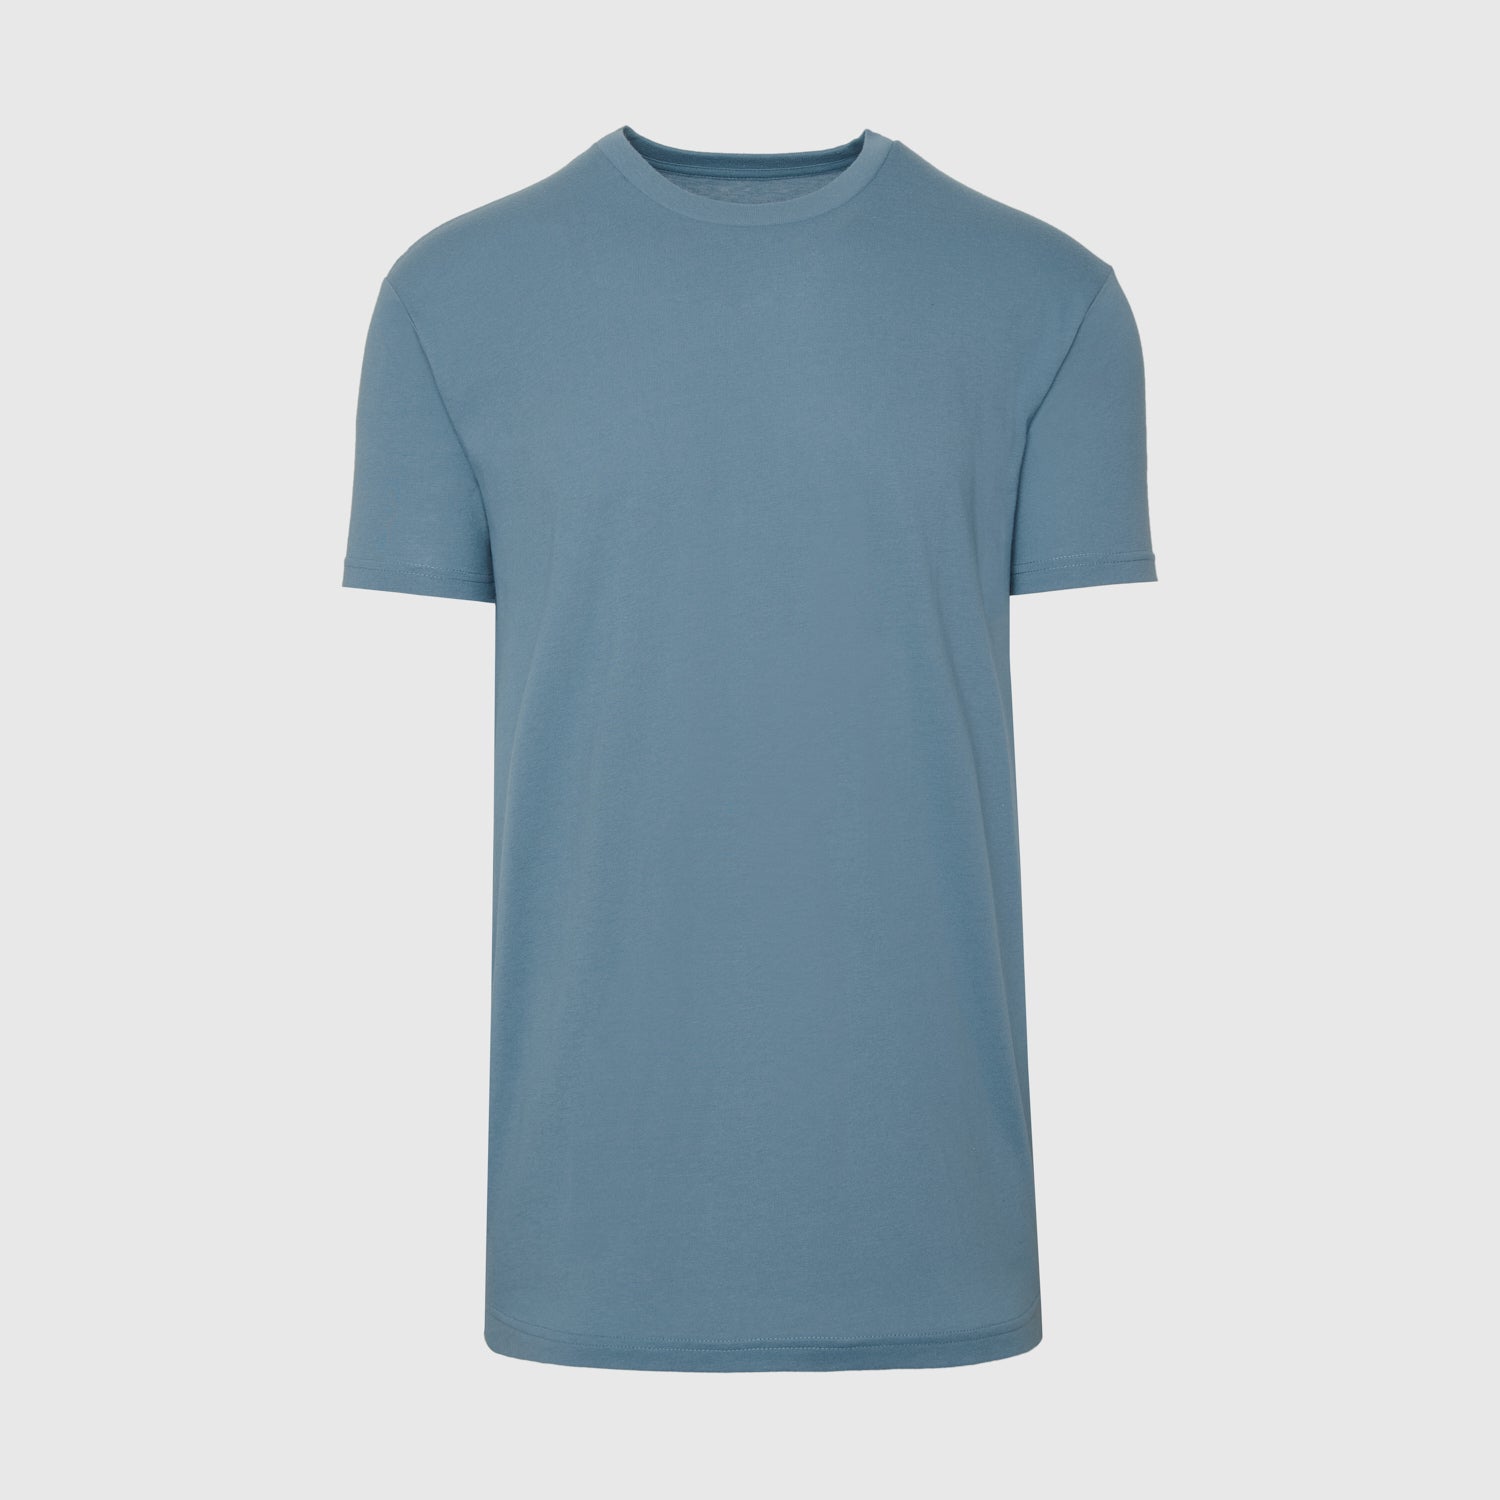 Bluestone Tall Round Hem Crew Neck T-Shirt – True Classic